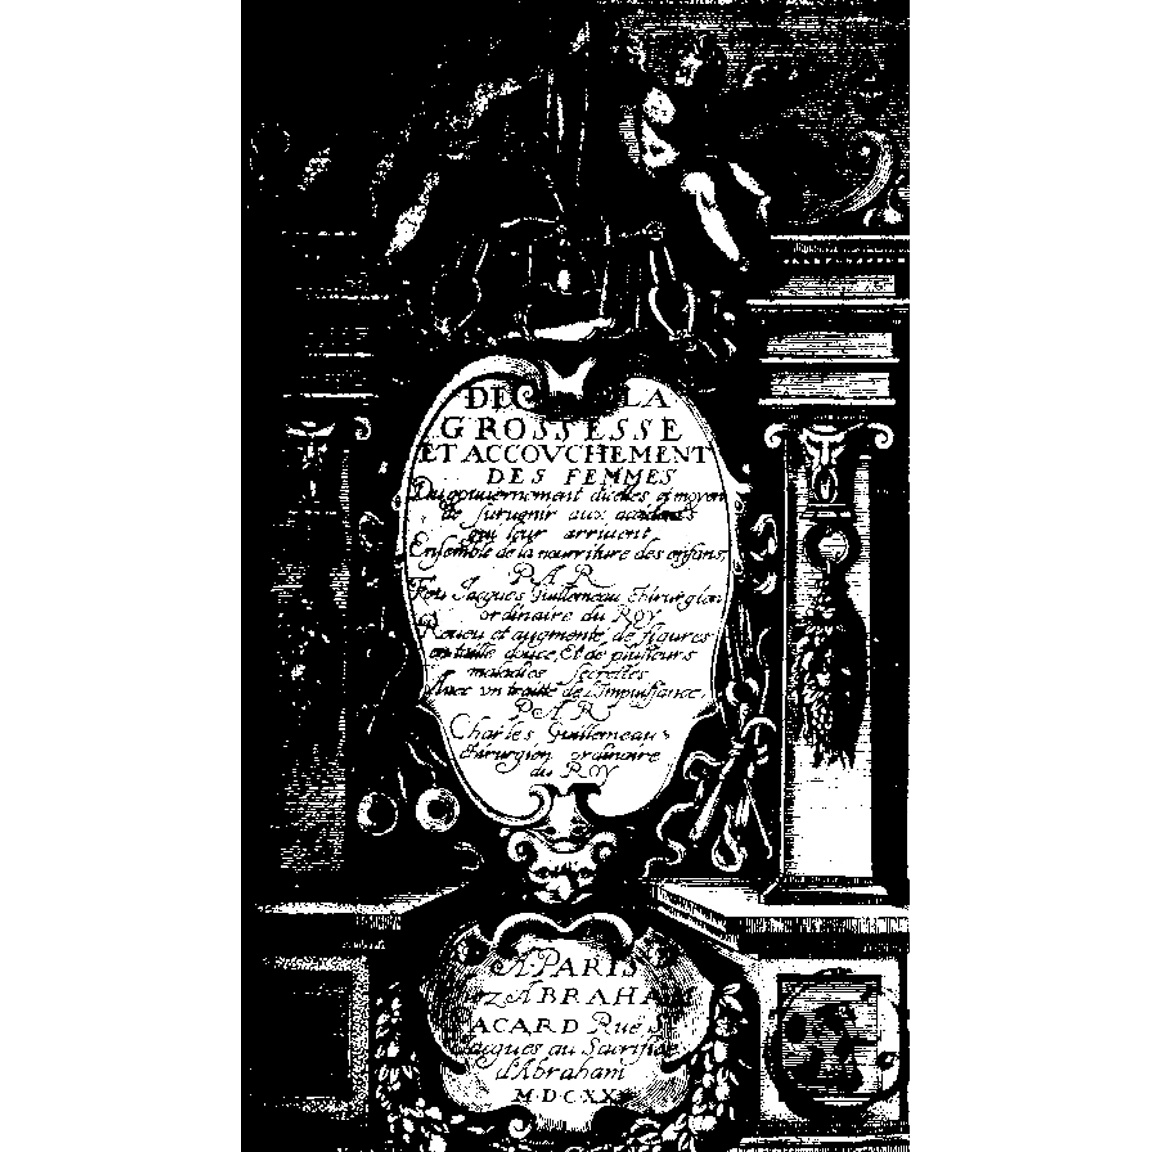 1620-GUILLEMEAU-GrossesseAccouchementFemmes-titre